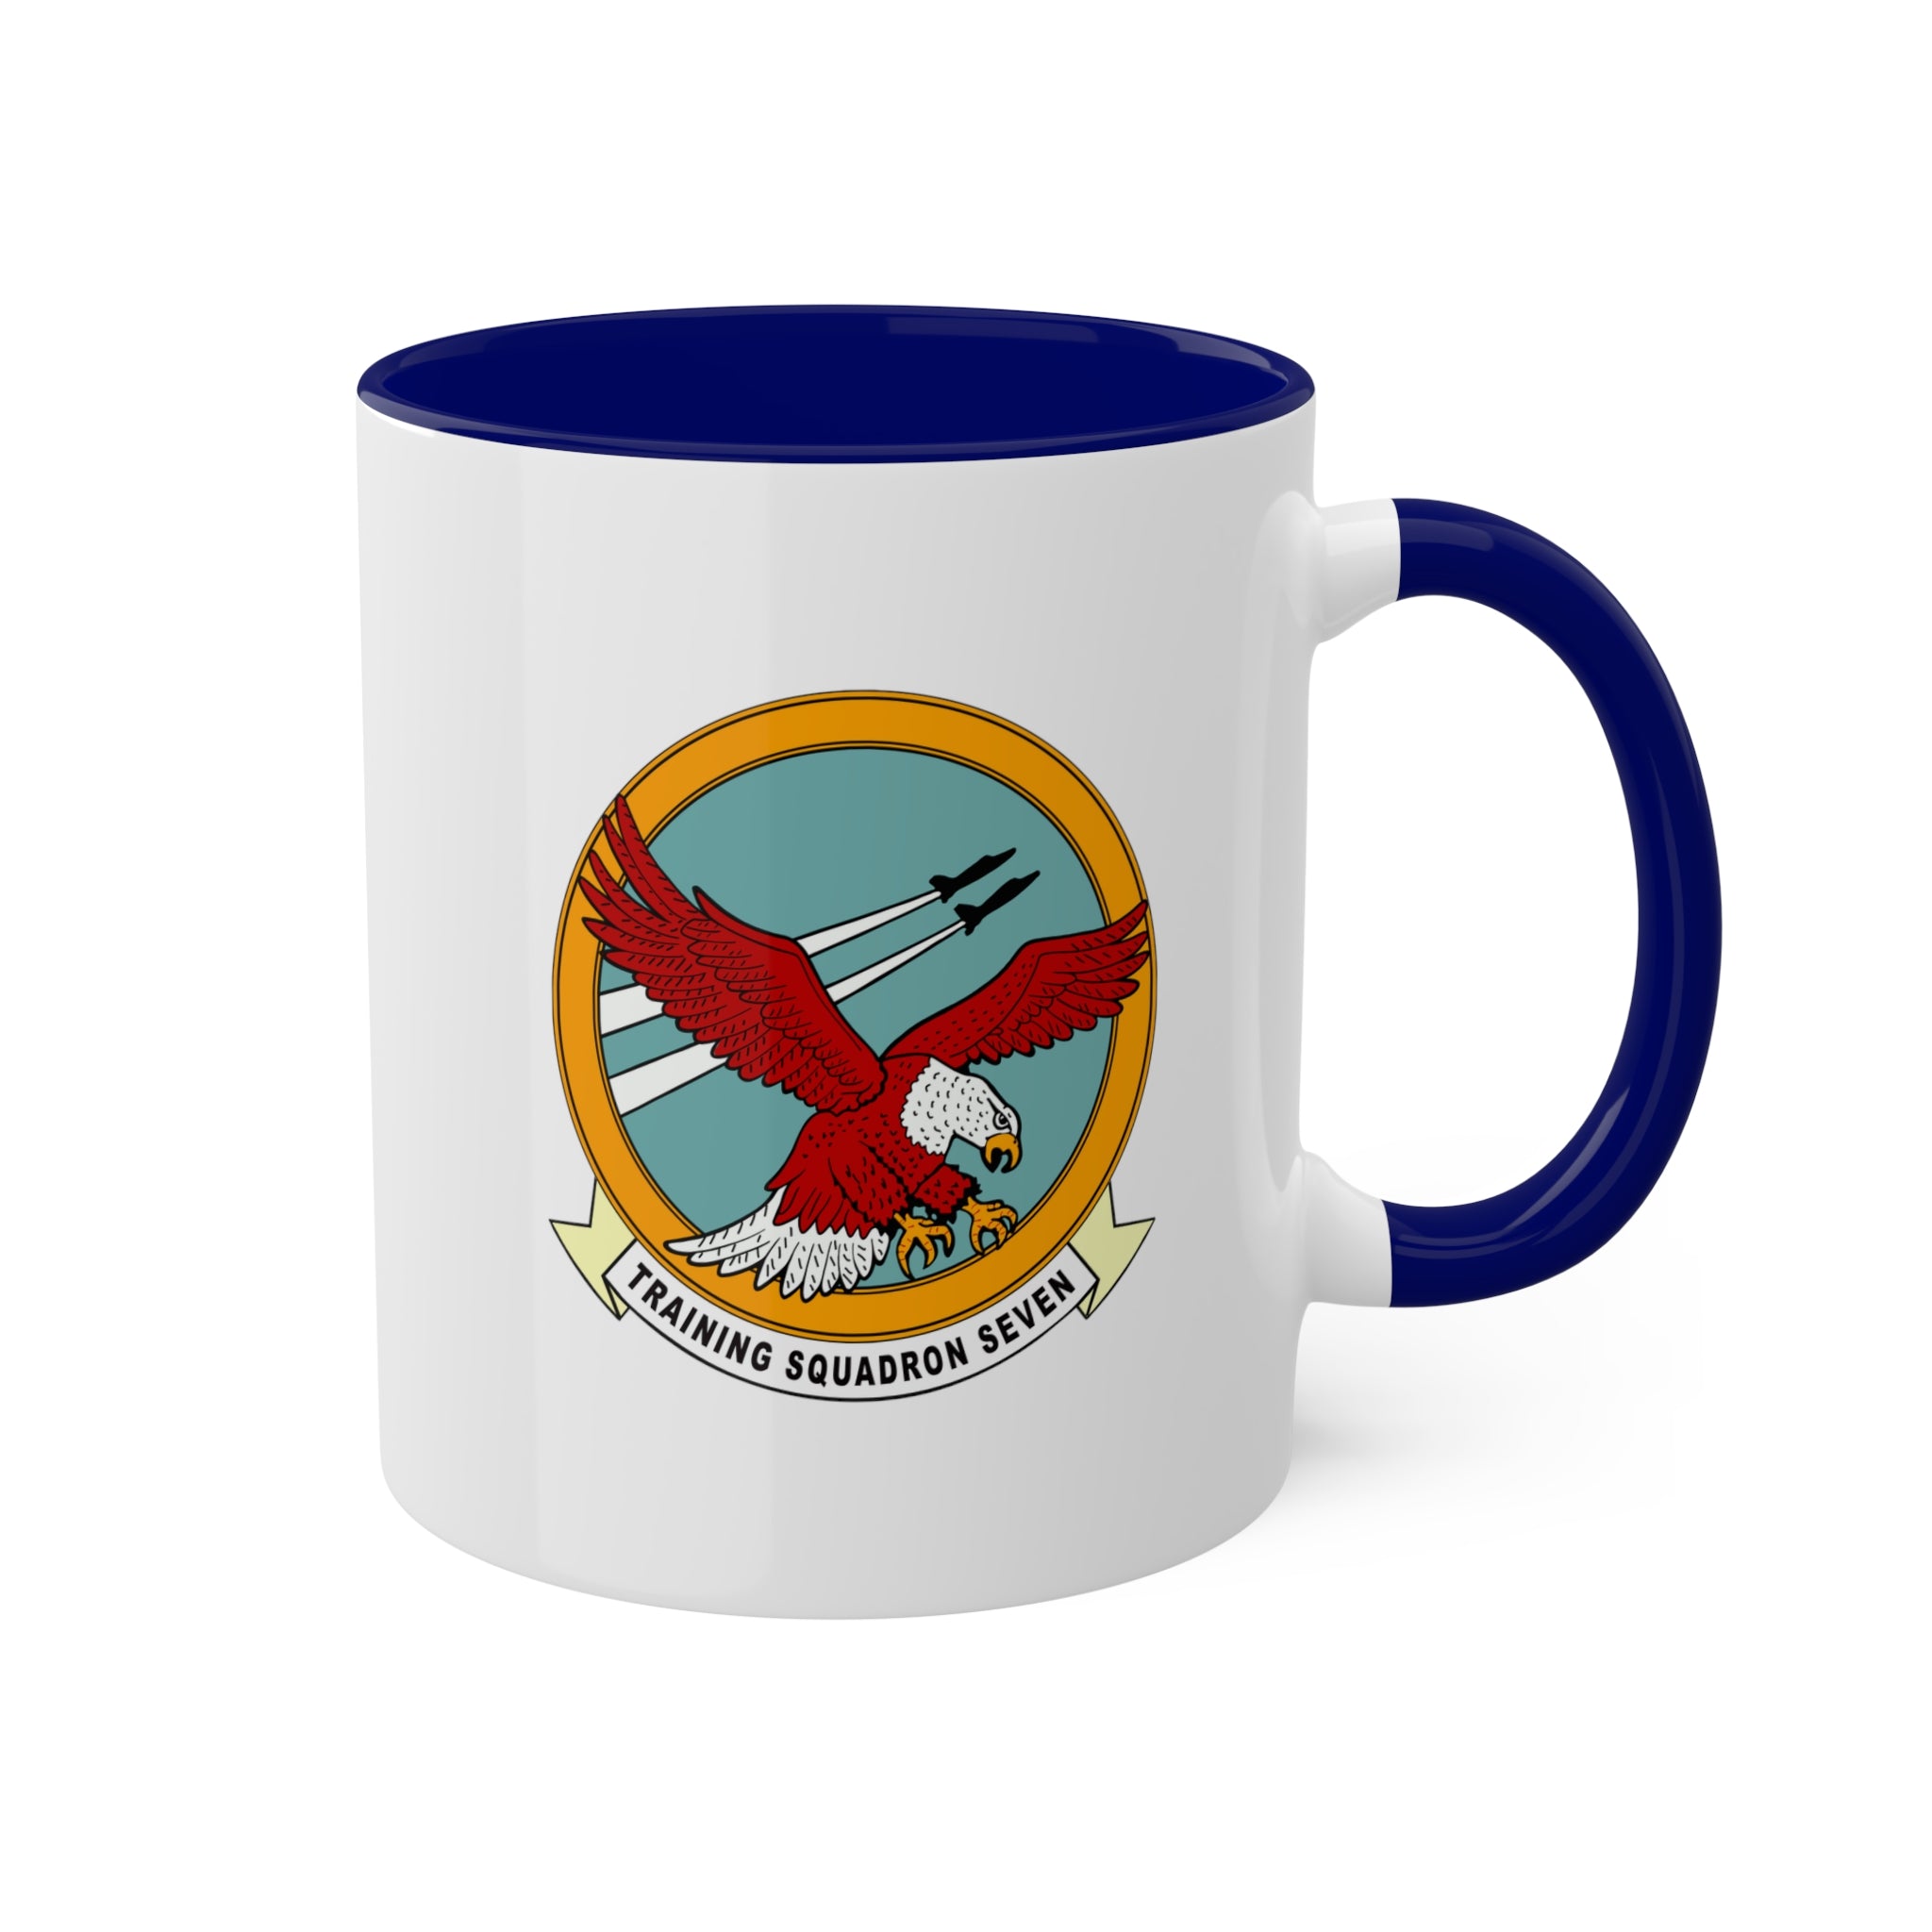 VT-7 "Eagles" Naval Aviator Wings 10oz. Coffee Mug, Navy Training Squadron flying the T-45 Goshawk